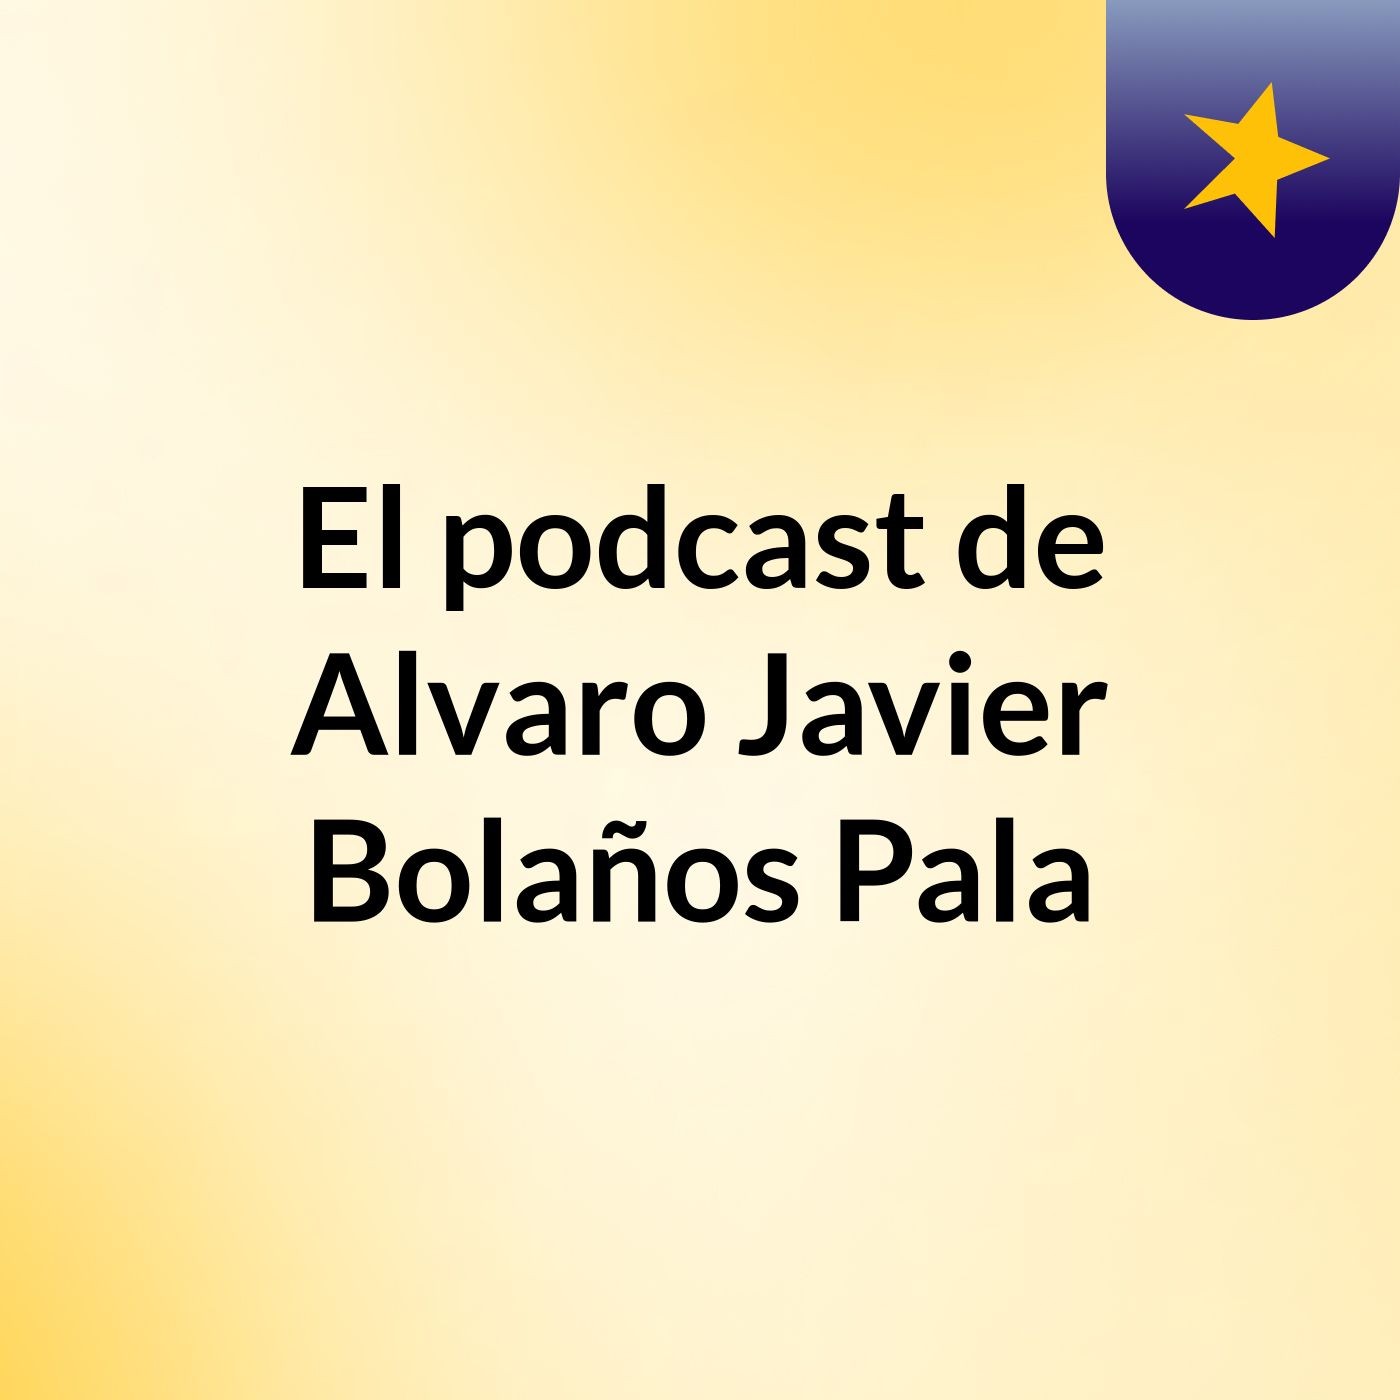 El podcast de Alvaro Javier Bolaños Pala